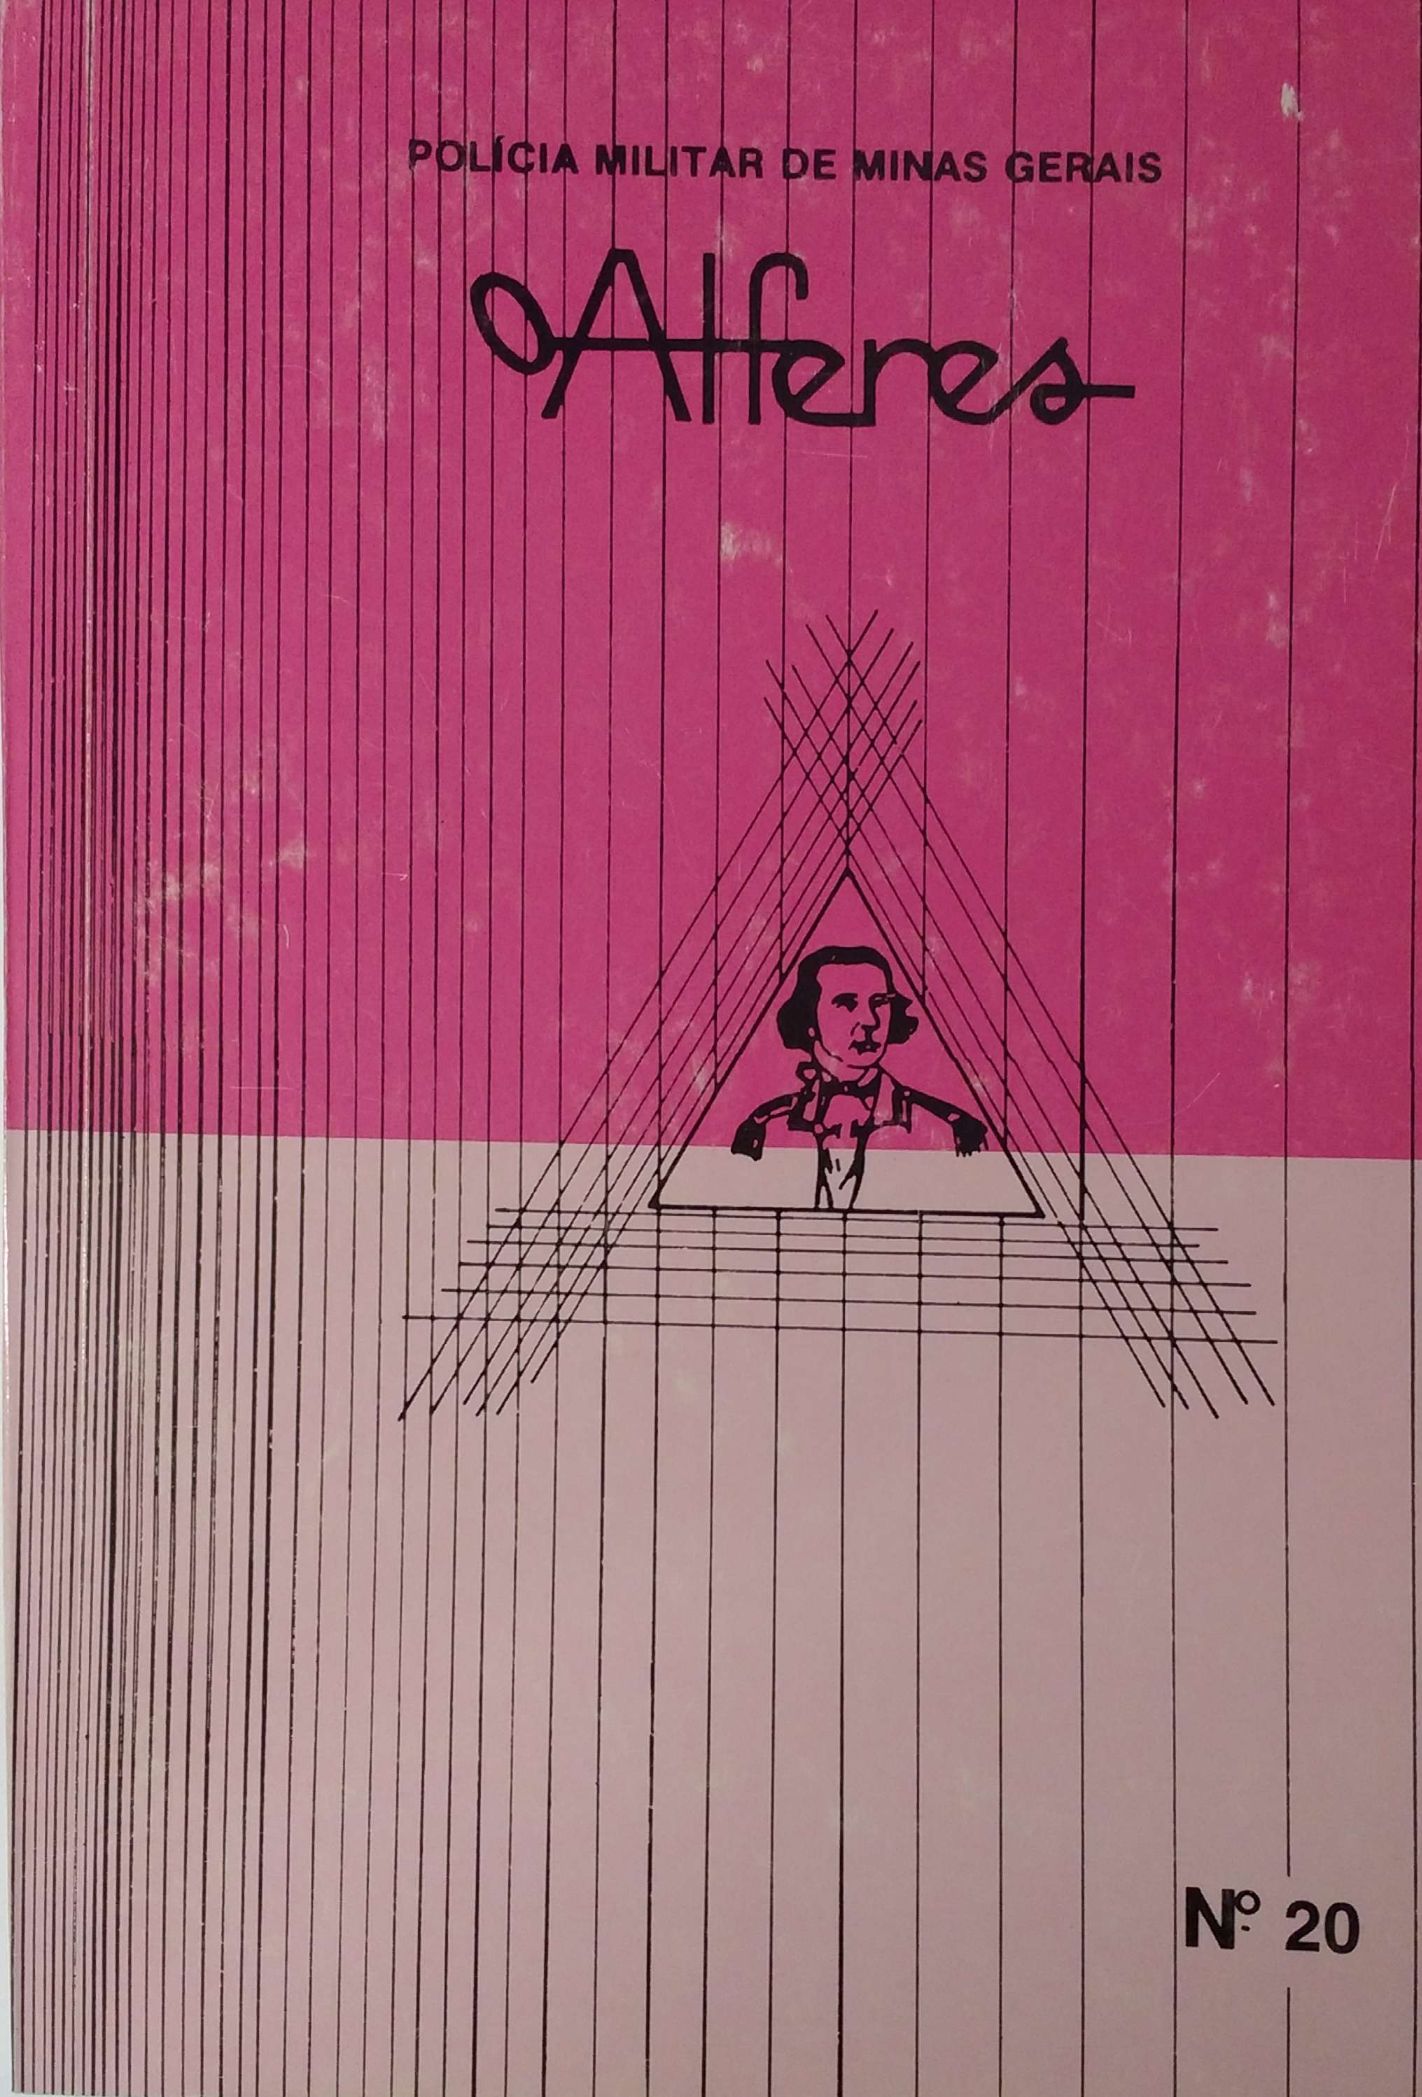 					Visualizar v. 7 n. 20 (1989): O ALFERES - JANEIRO/MARÇO 1989
				